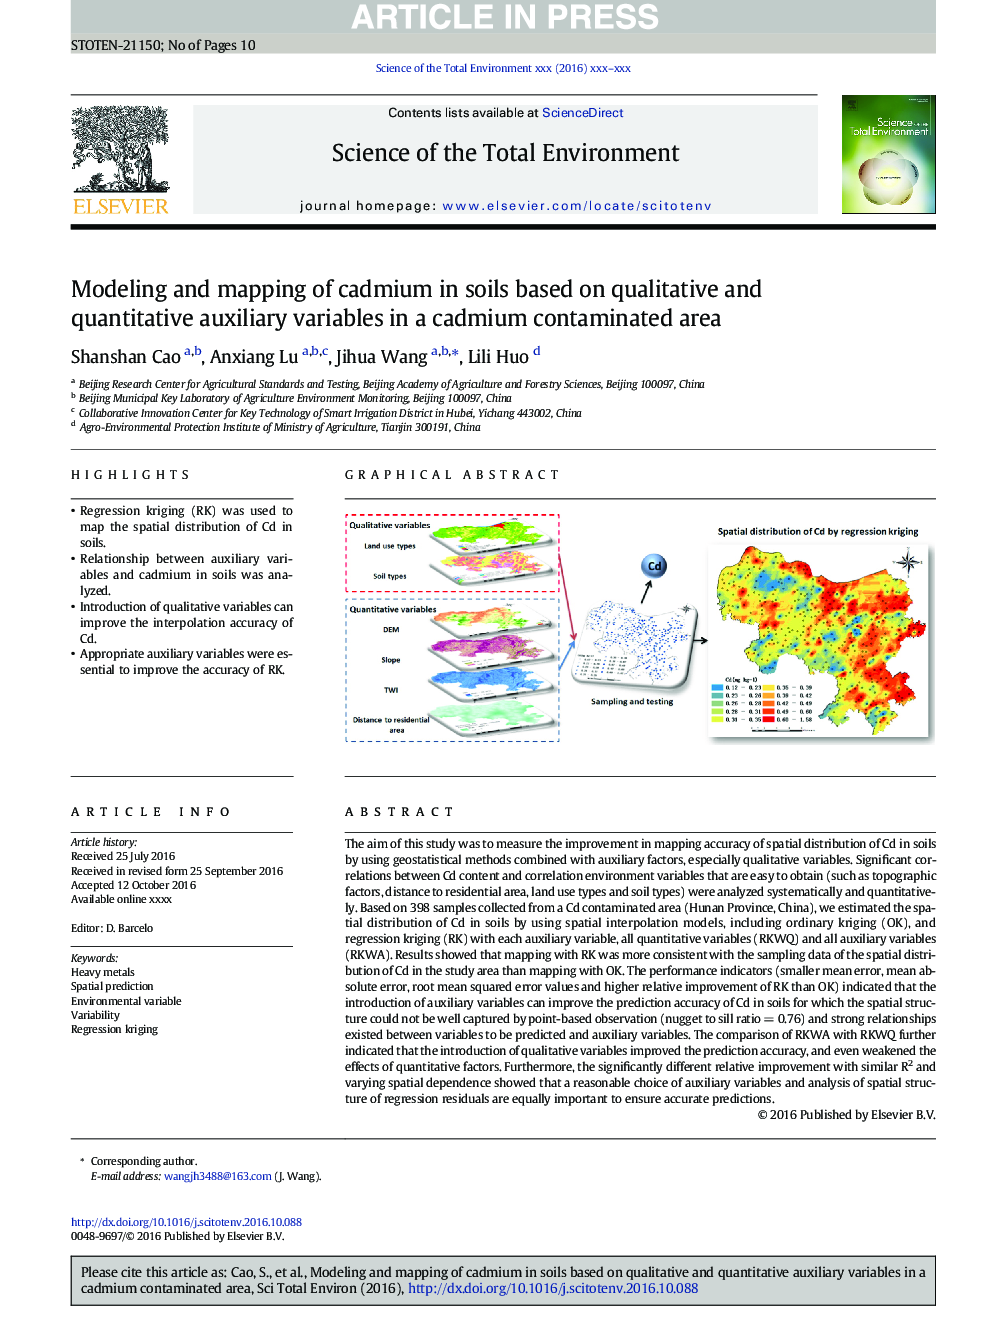 مدلسازی و نقشه برداری کادمیم در خاک بر اساس متغیرهای کمکی کیفی و کمی در یک منطقه آلوده کادمیوم 